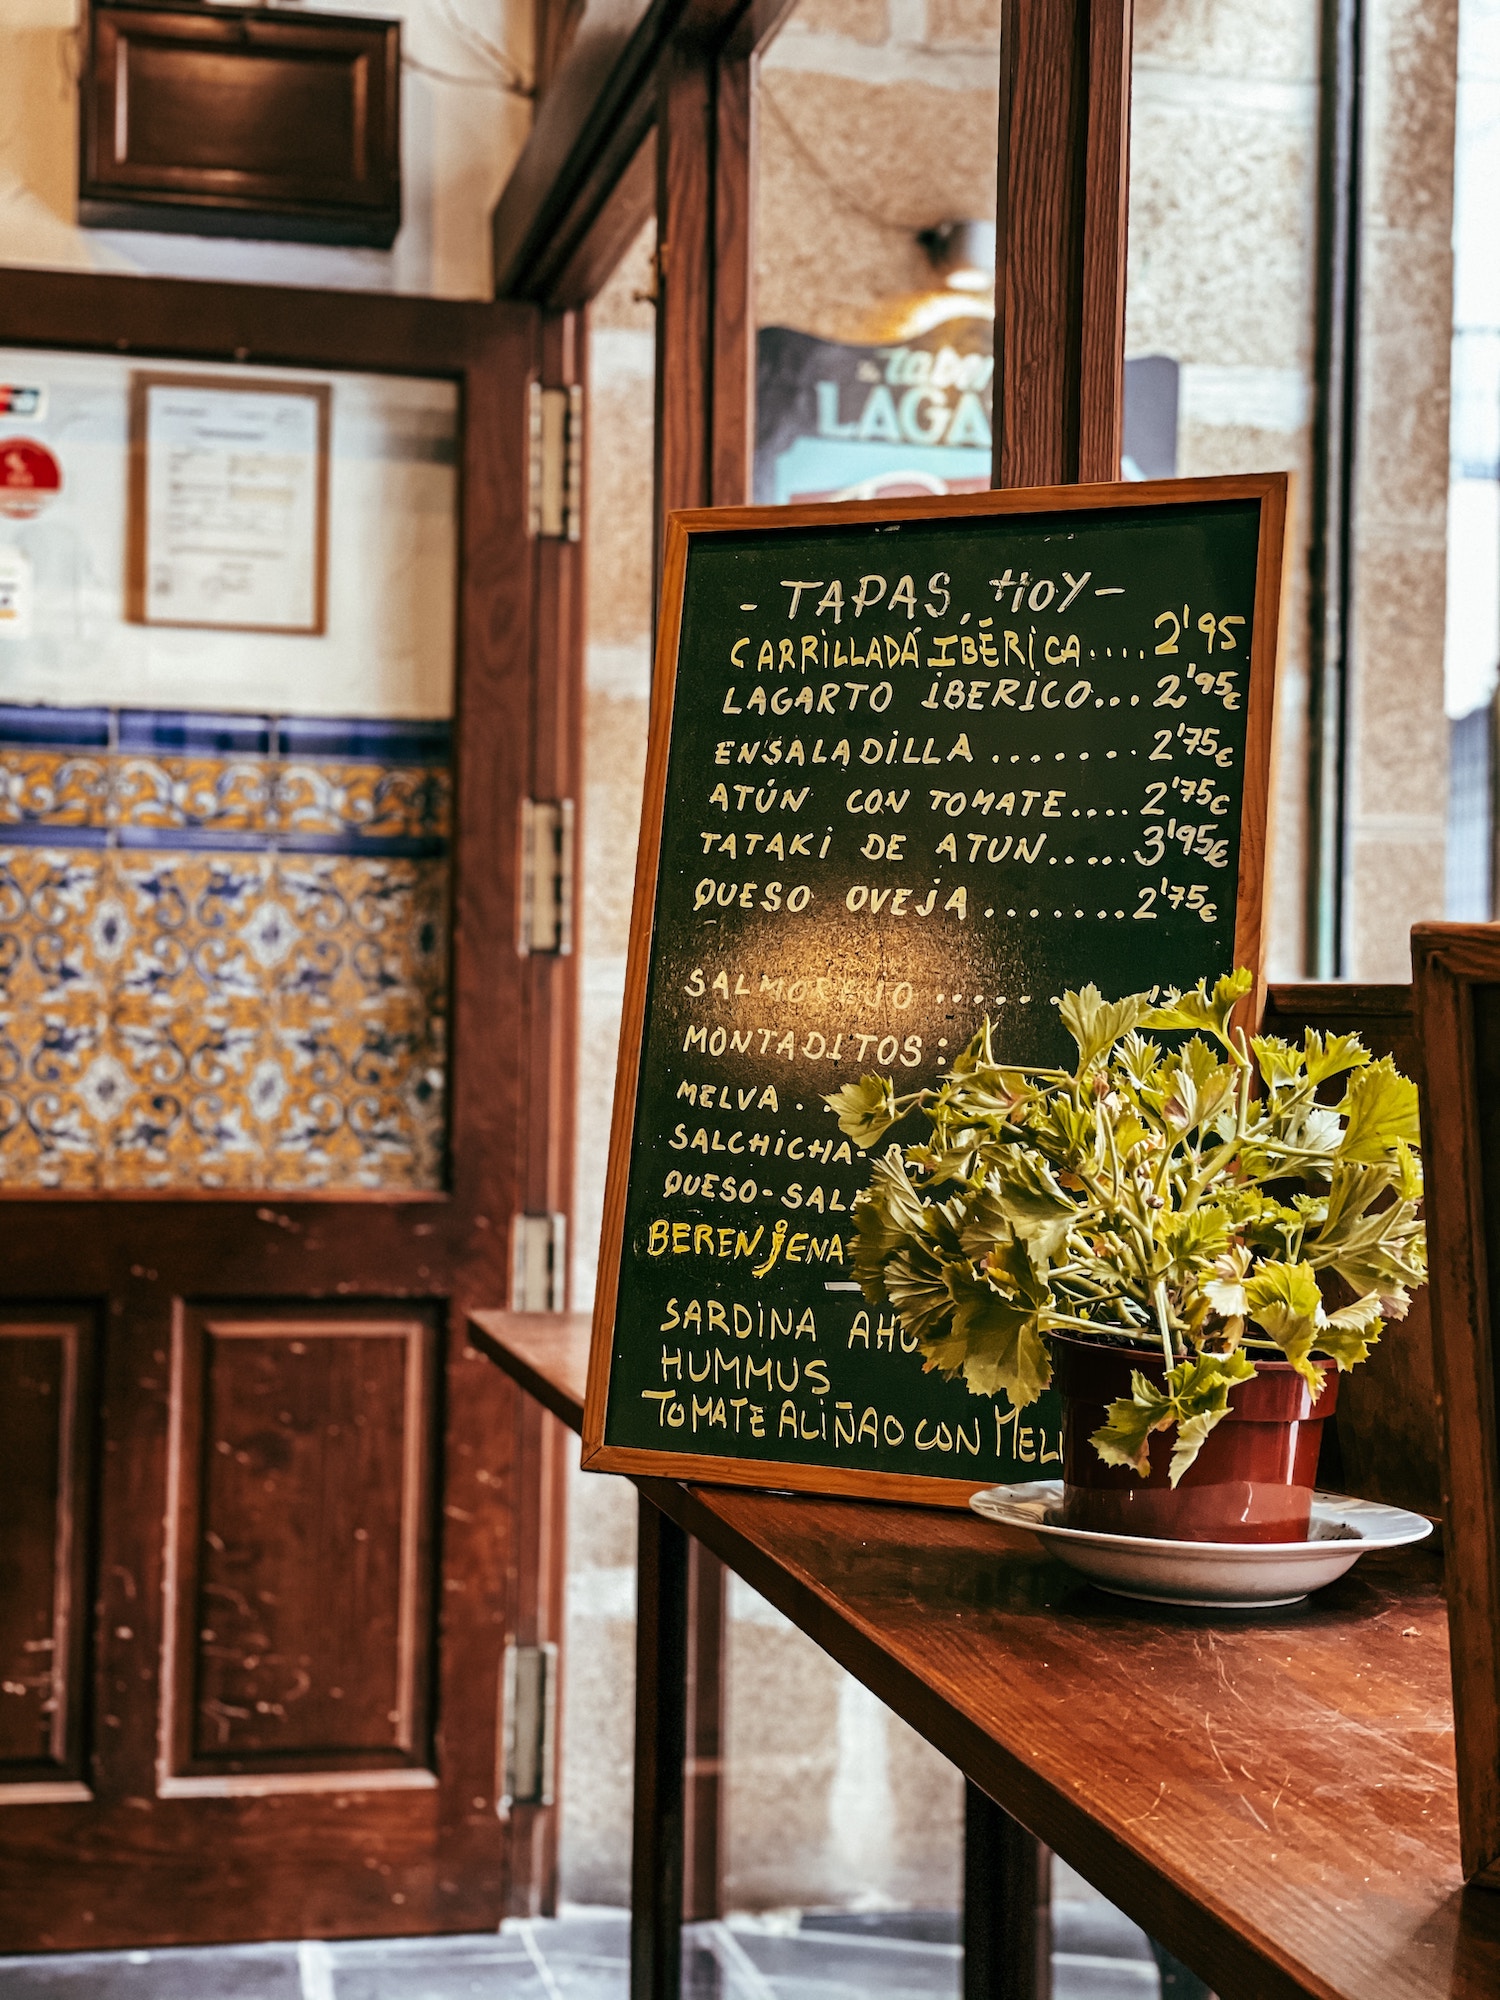 The Best Tapas Restaurants In Seville